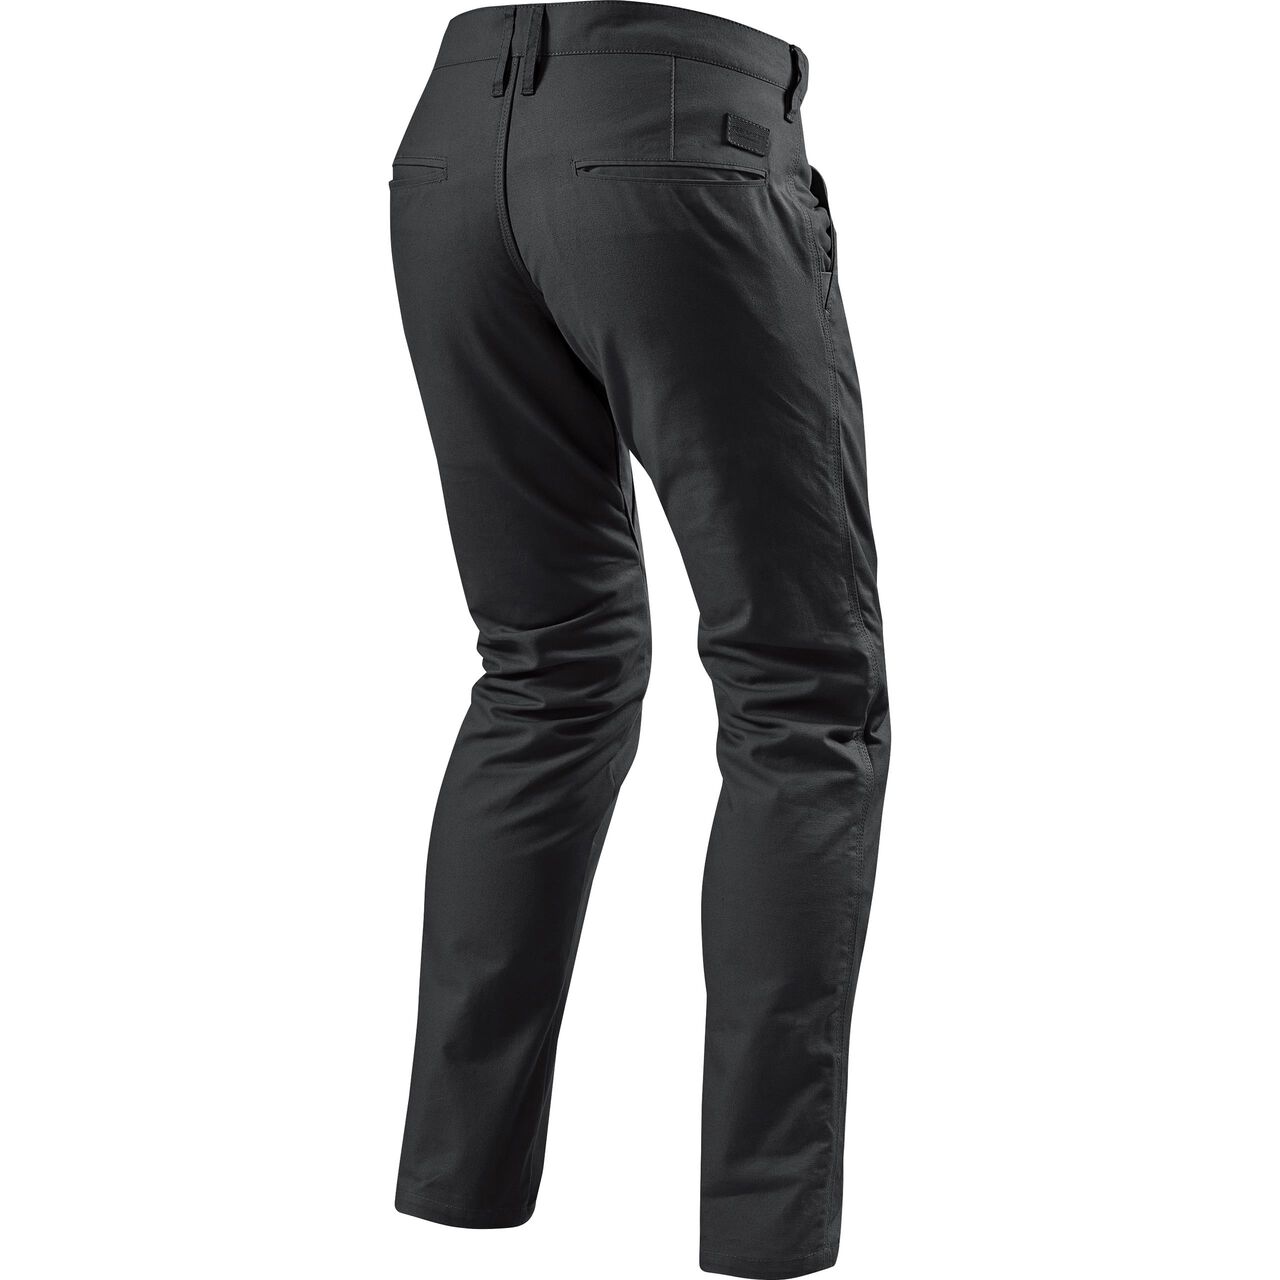 [SALE] Revit Alpha RF Black Textile Pants - L32/W38